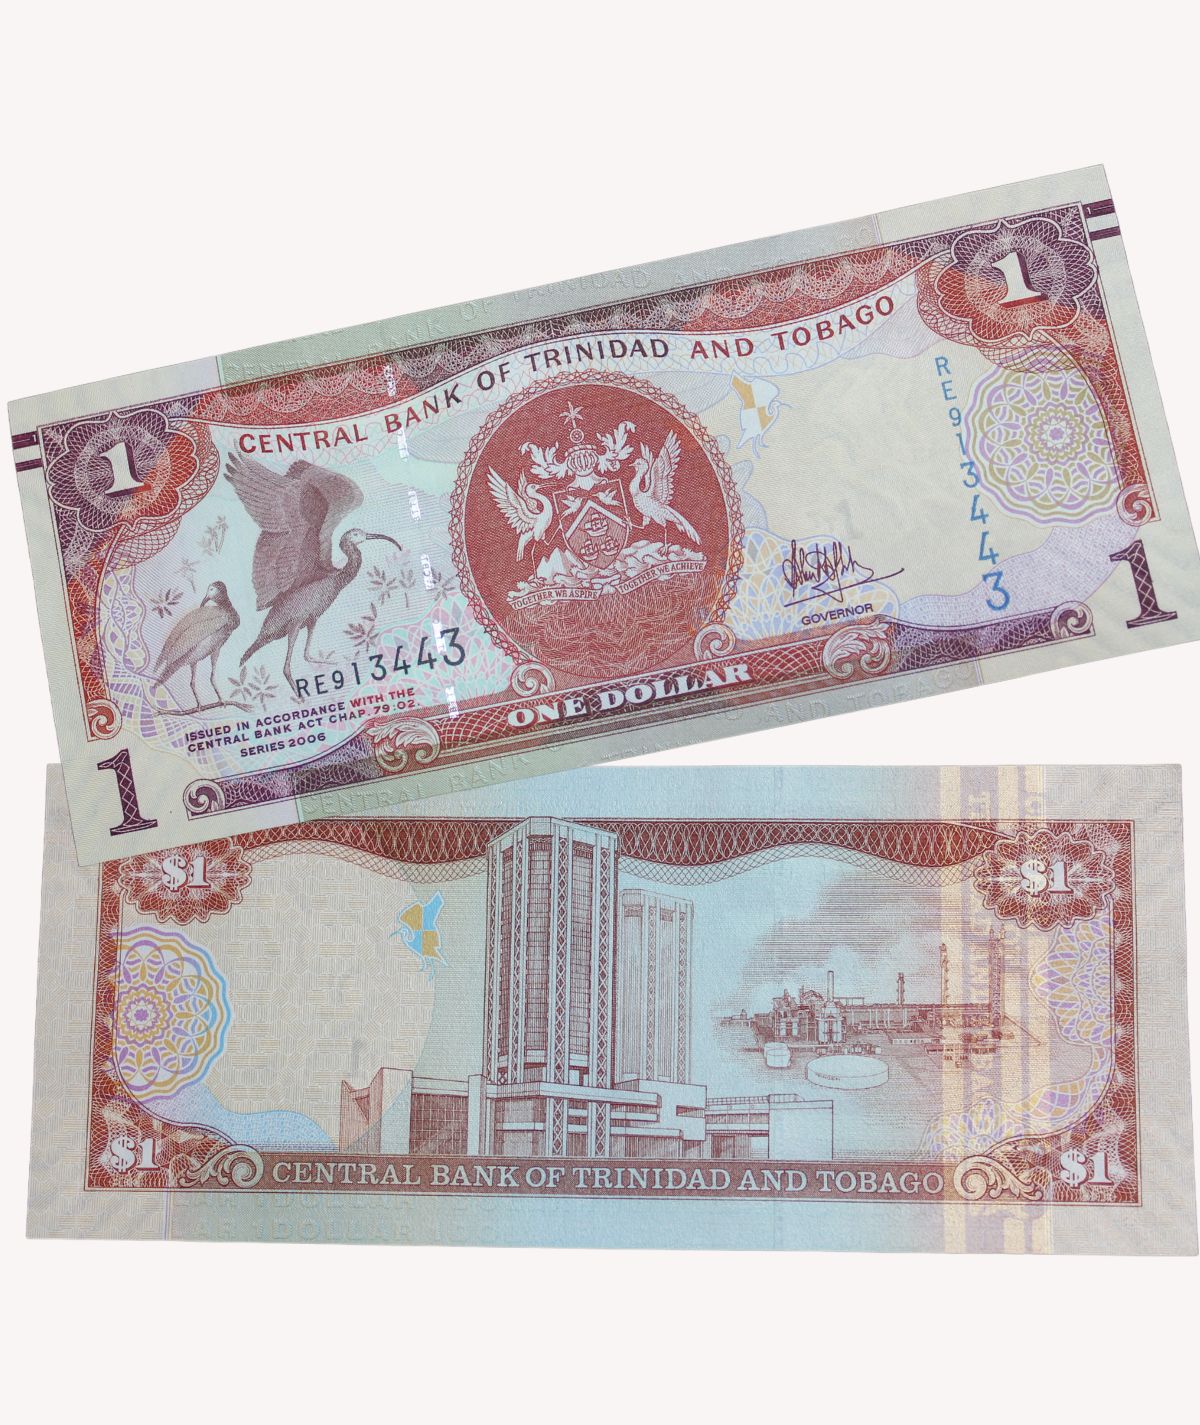 Billete 1 Dollar, Trinidad y Tobago - 2006 / GoldenArt